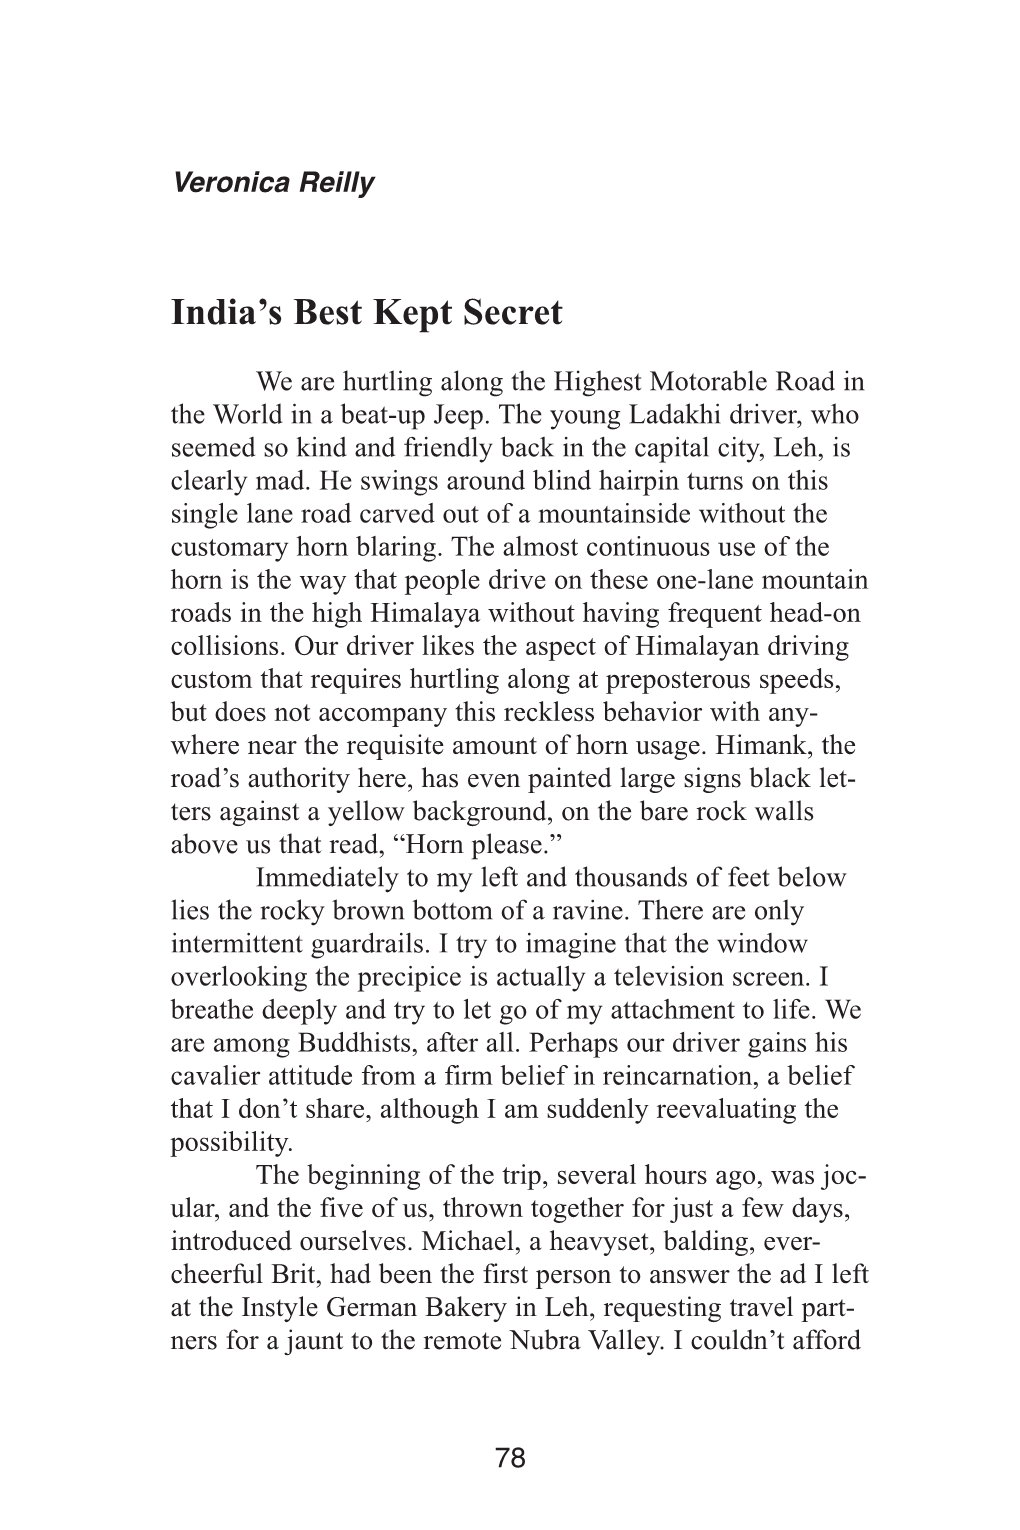 India's Best Kept Secret